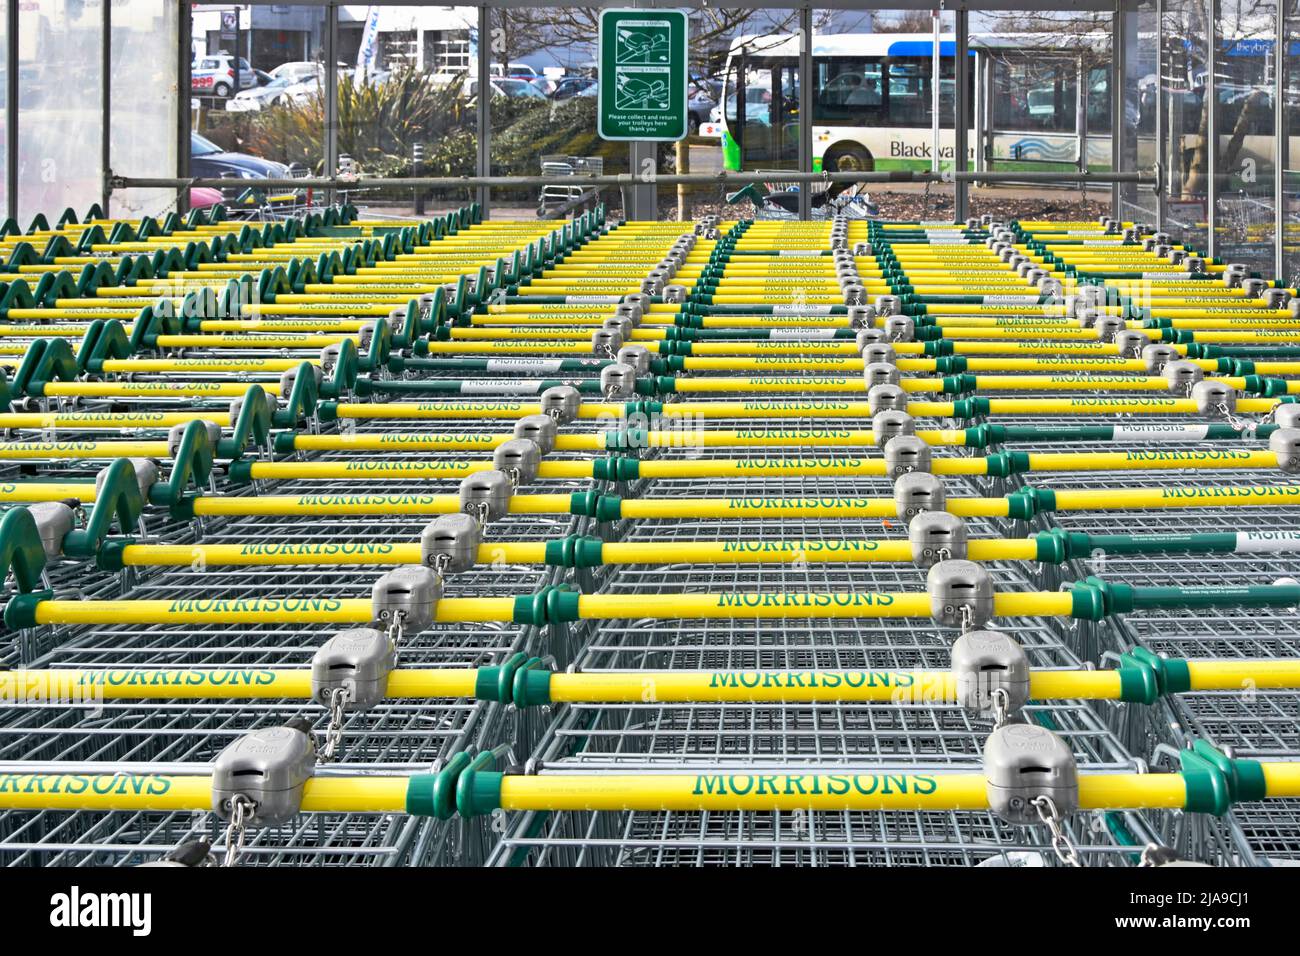 Gros plan supermarché chariot à provisions manipuler répétition étiquettes de marquage Morrisons alimentaire épicerie commerce de détail shoppers chariot Park Essex Angleterre Royaume-Uni Banque D'Images